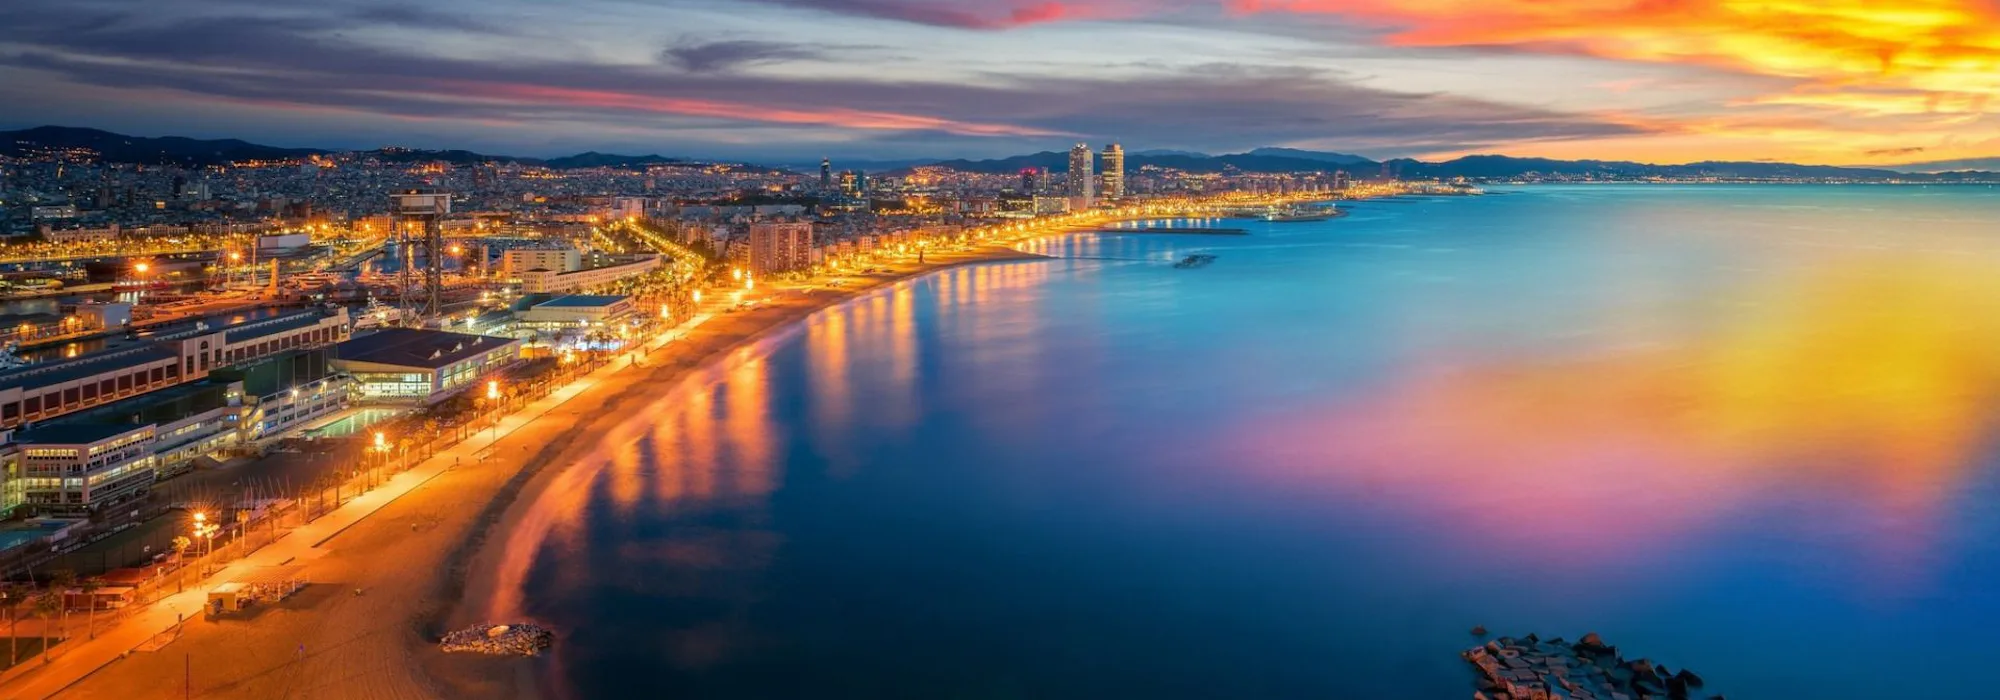 Krydstogt i Middelhavet - Barcelona